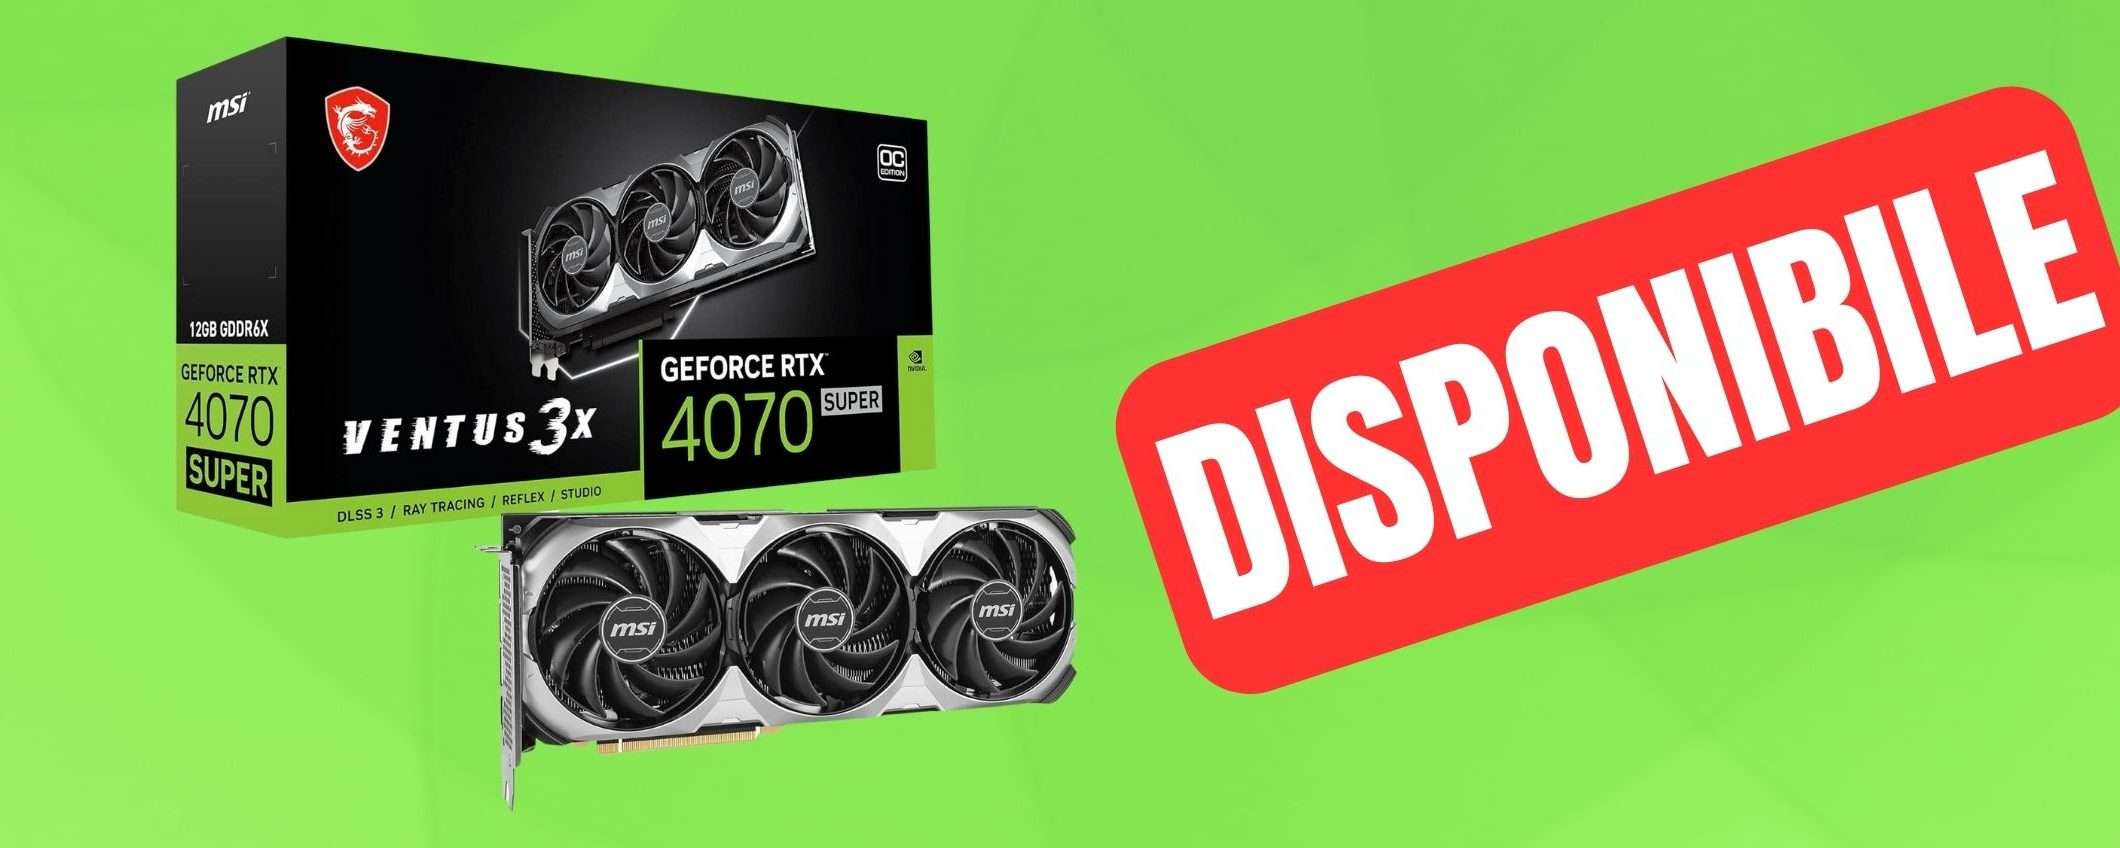 GeForce RTX 4070 Super DISPONIBILE su Amazon: consegna immediata